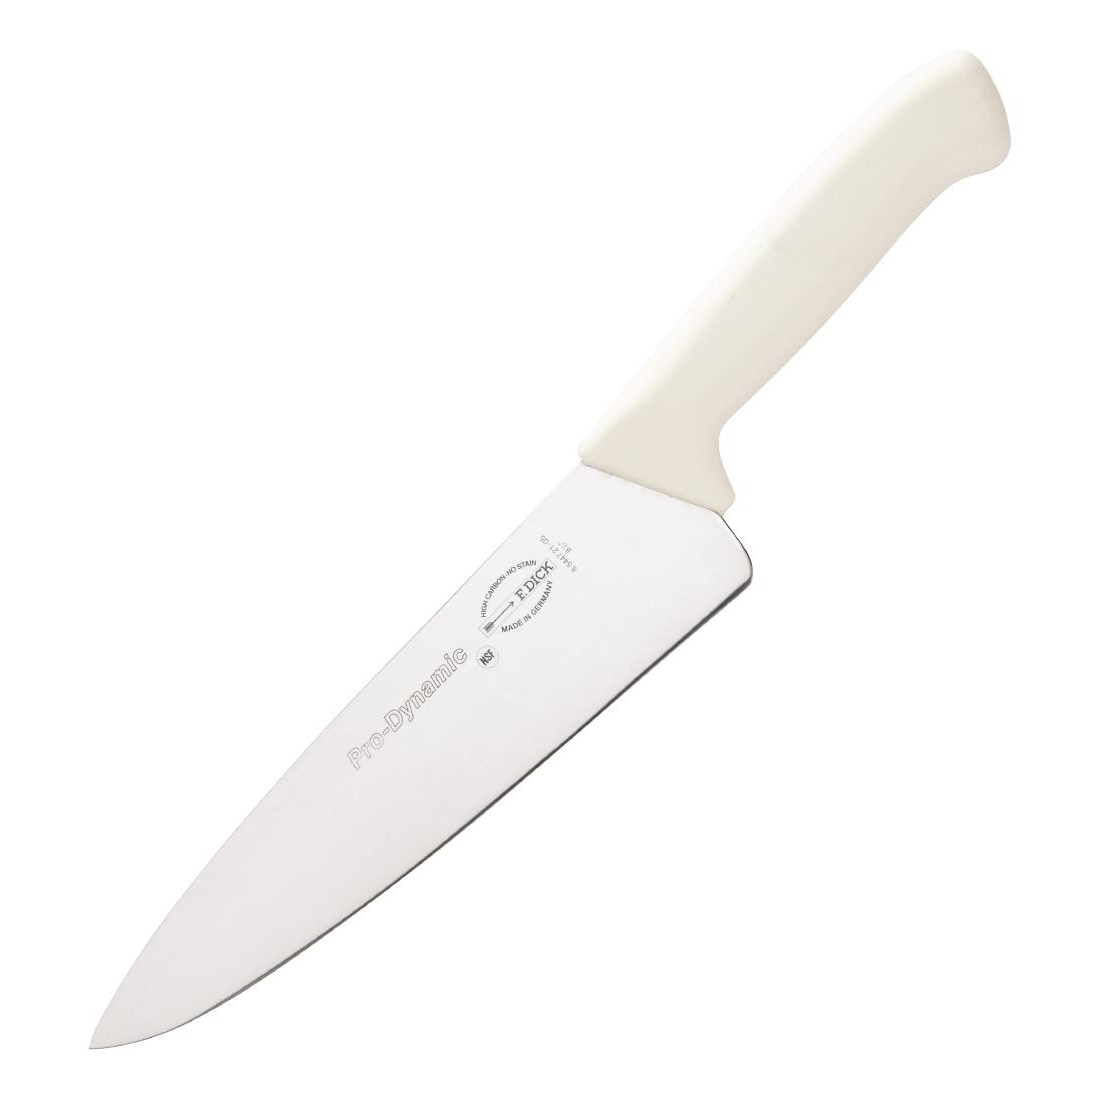 Ножи dick. Ножи Paderno. Кухонный нож Paderno. Нож поварской Падерно 25. Складной поварской нож.